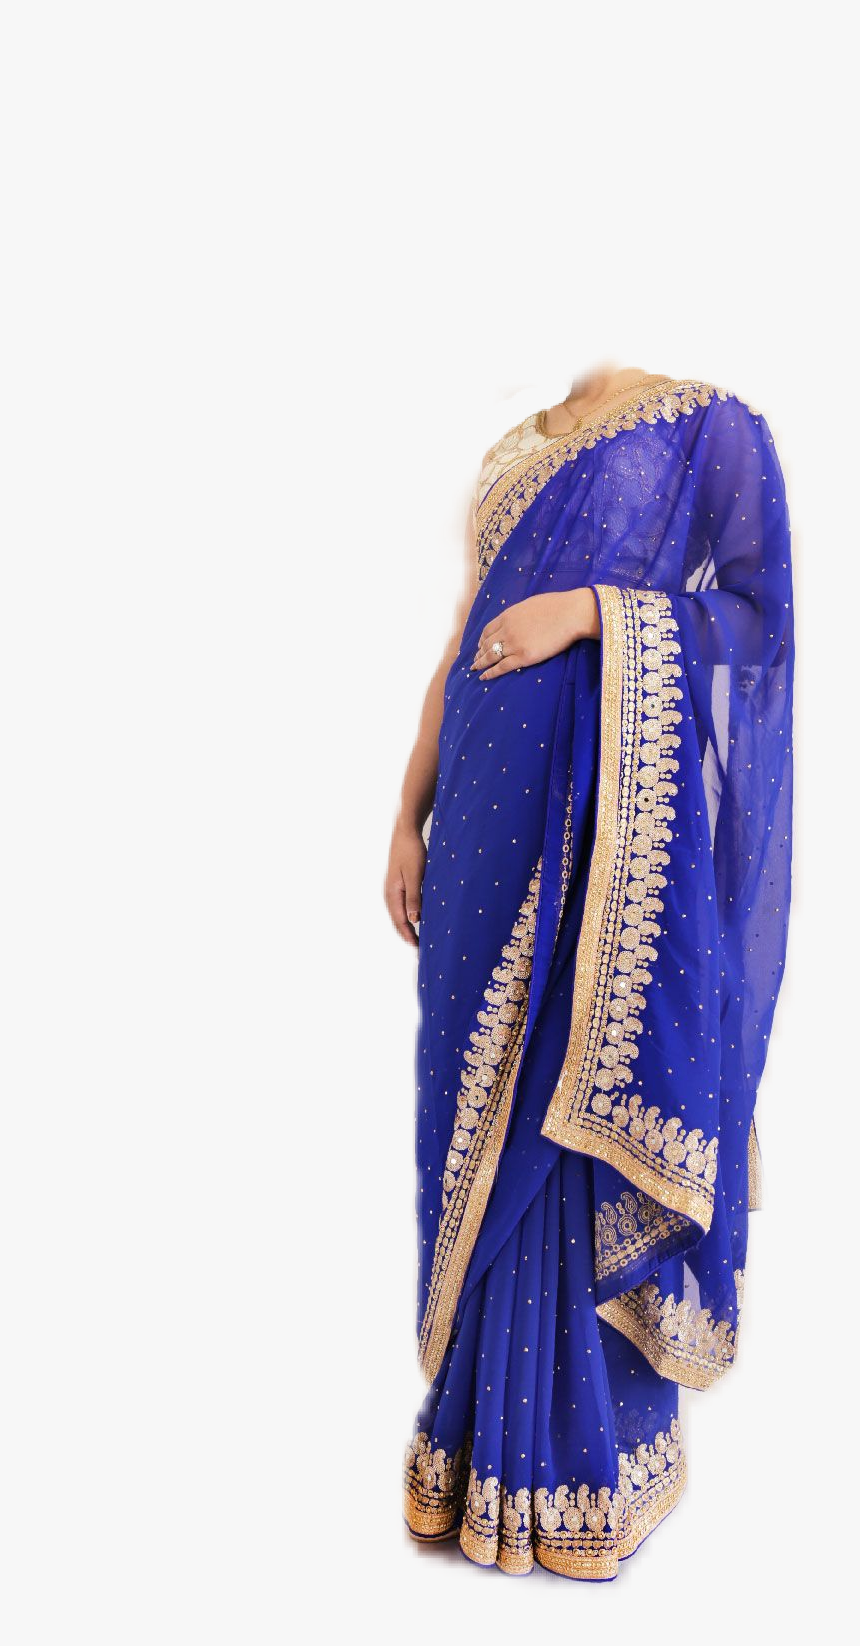 #sari #indian #dress - Blue And Gold Sari, HD Png Download, Free Download